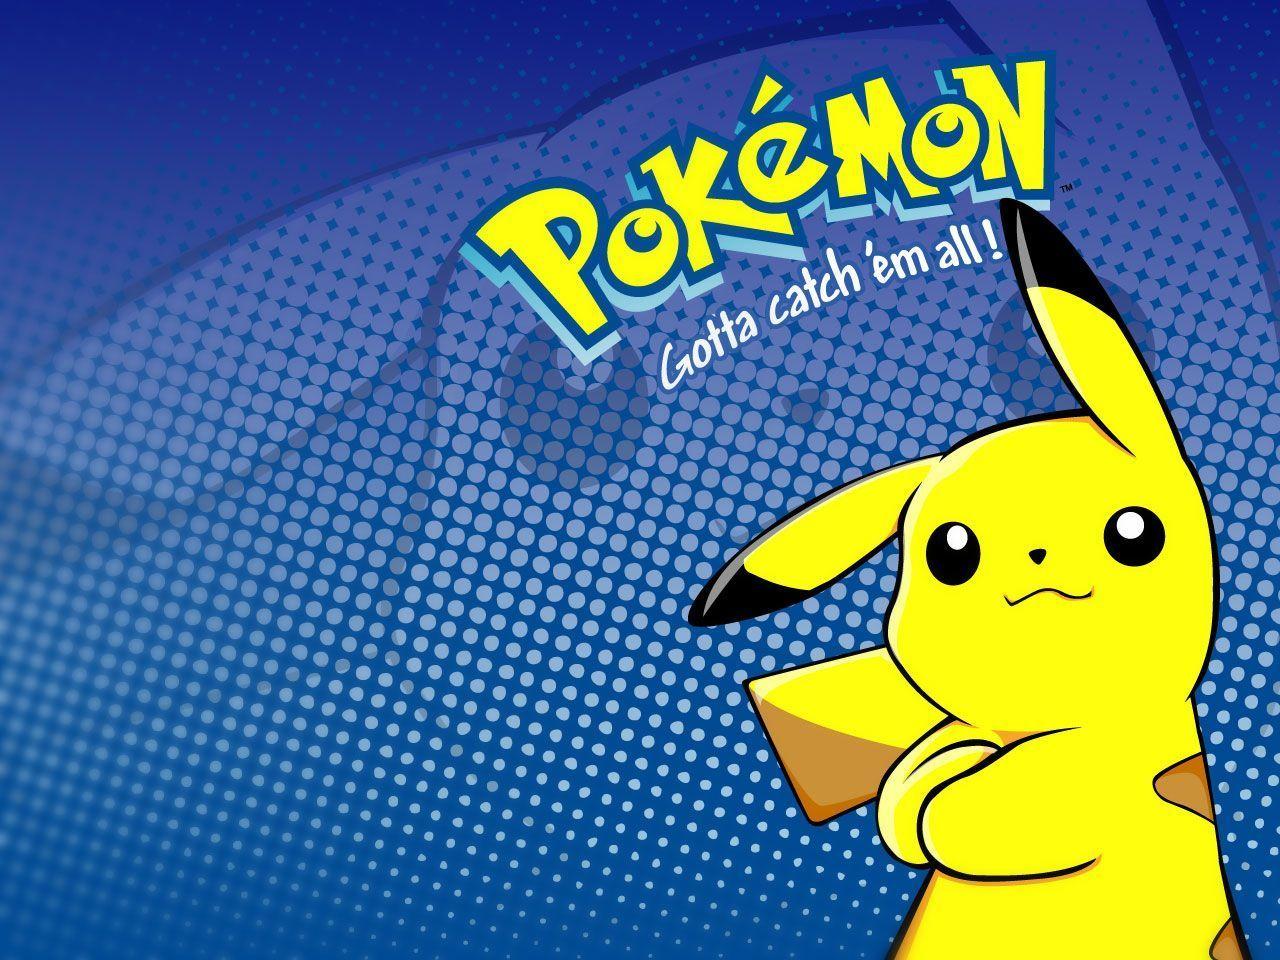 Pokemon Pikachu HD Wallpaper